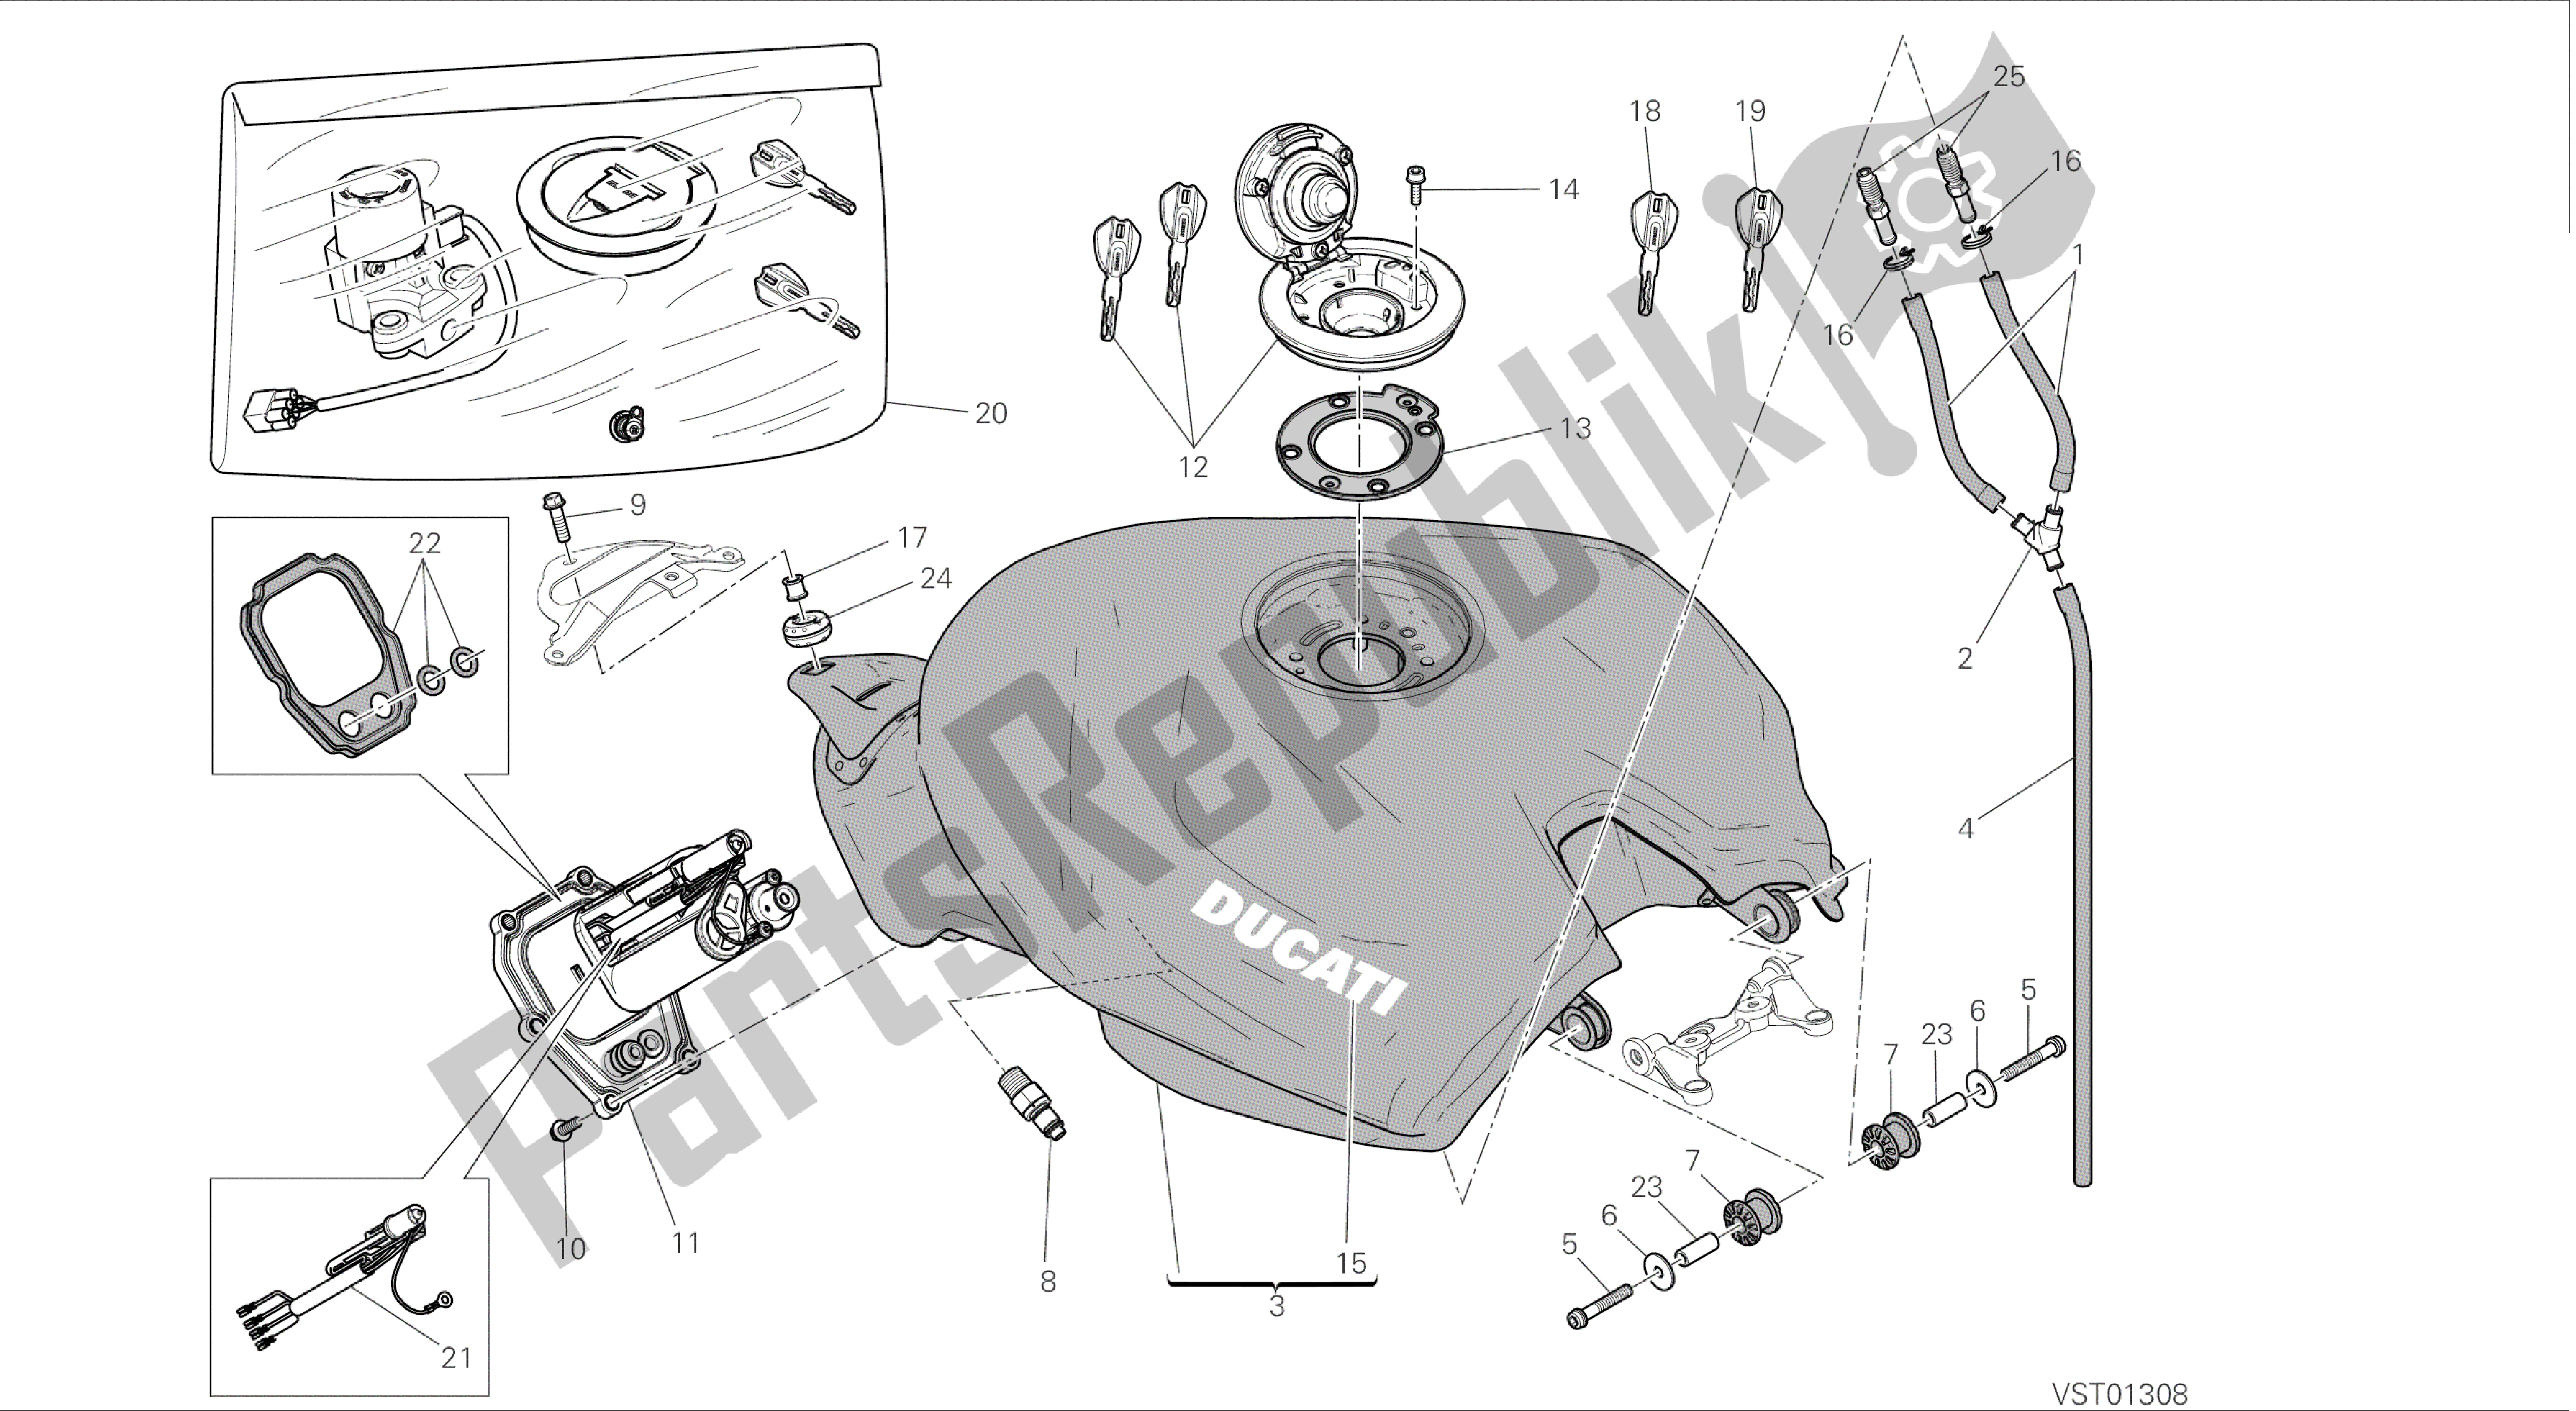 Alle onderdelen voor de Tekening 032 - Tank [mod: 899 Abs; Xst: Aus, Eur, Fra, Jap] Groepsframe van de Ducati Panigale 899 2014